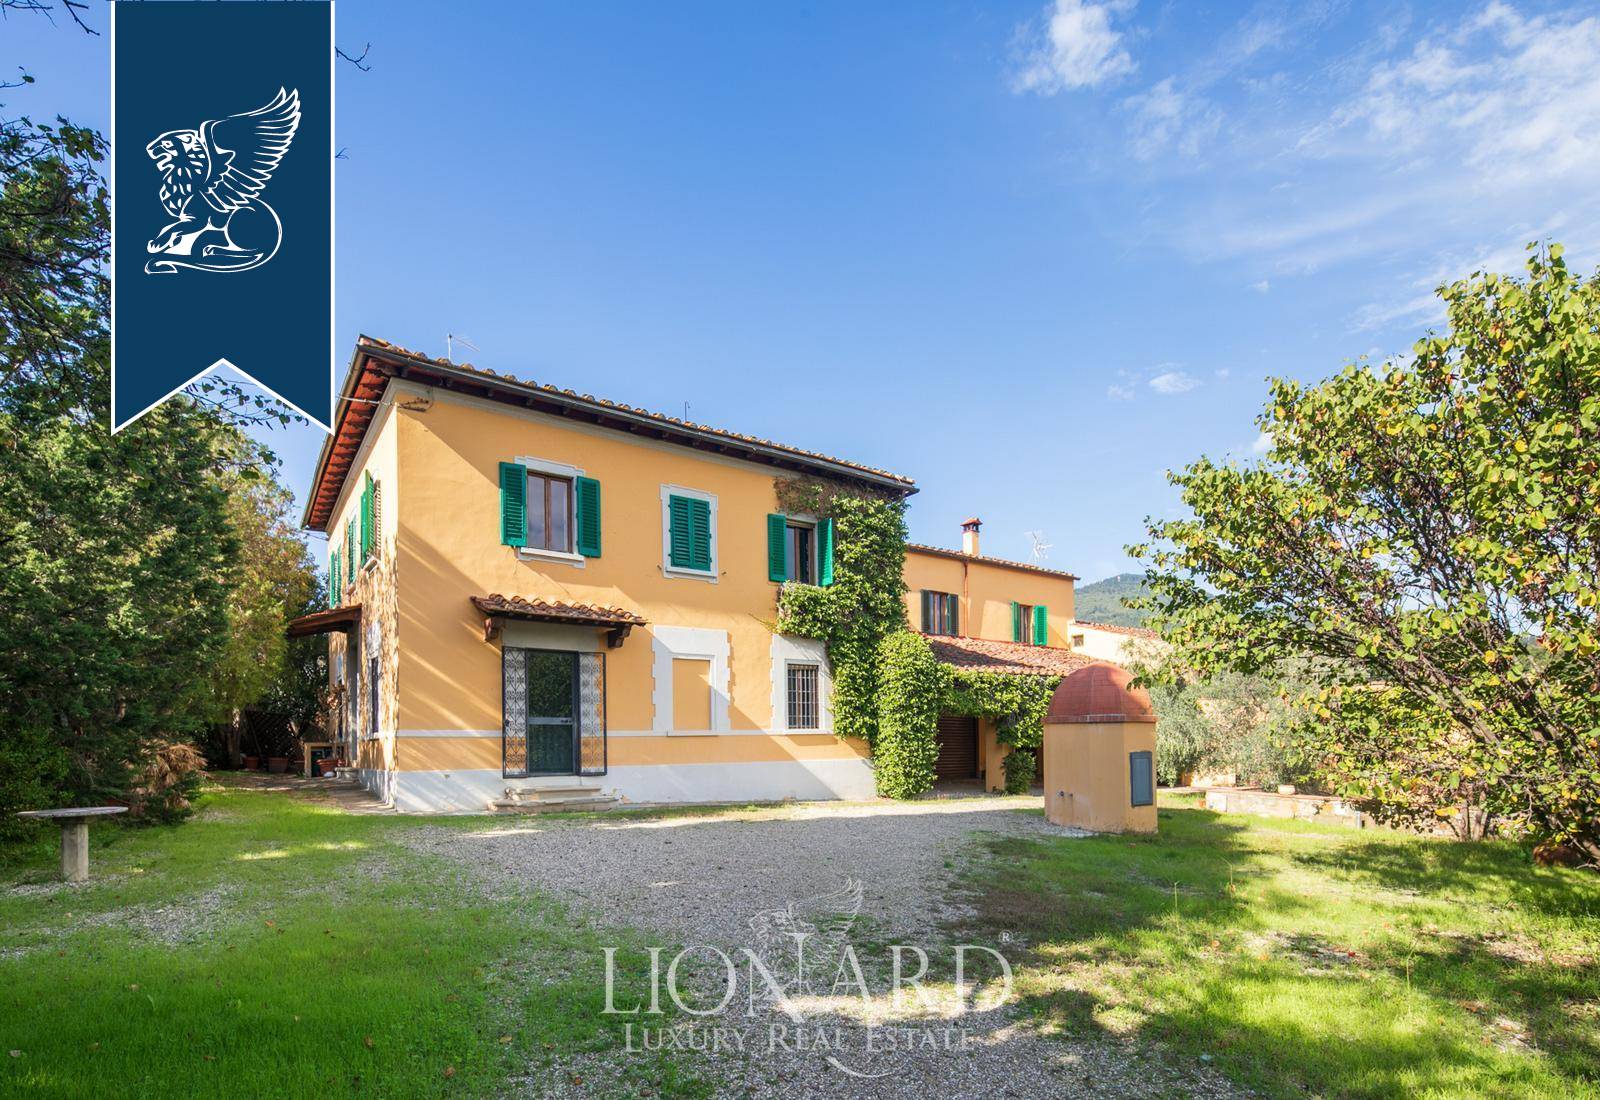 Villa in Vendita a Firenze: 0 locali, 380 mq - Foto 1